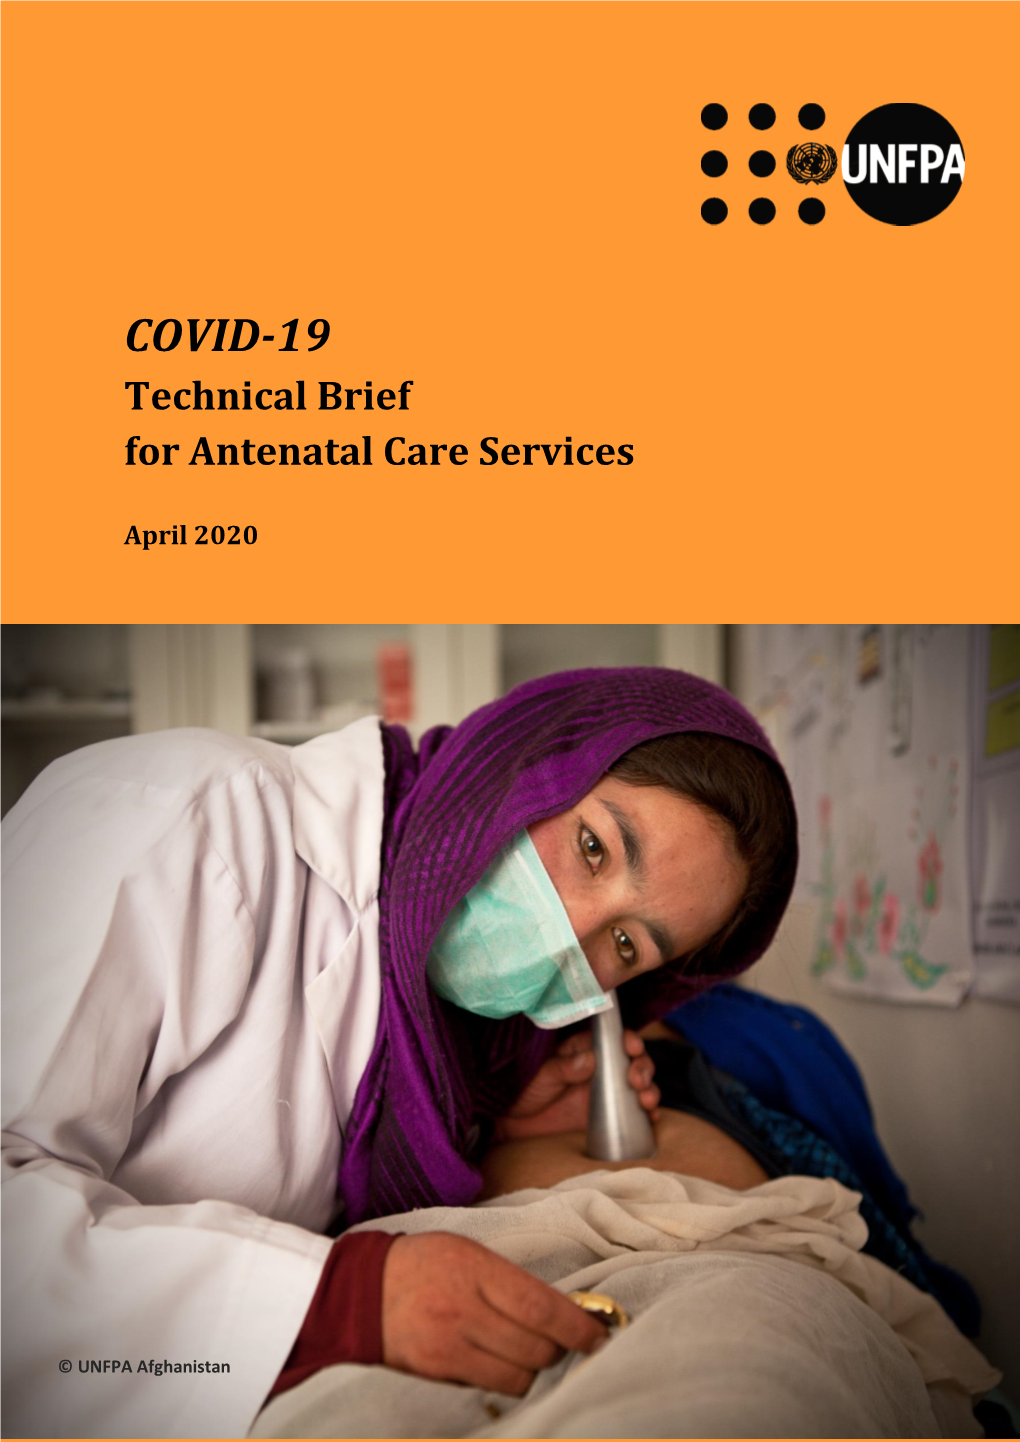 COVID-19 Technical Brief for Antenatal Care Services